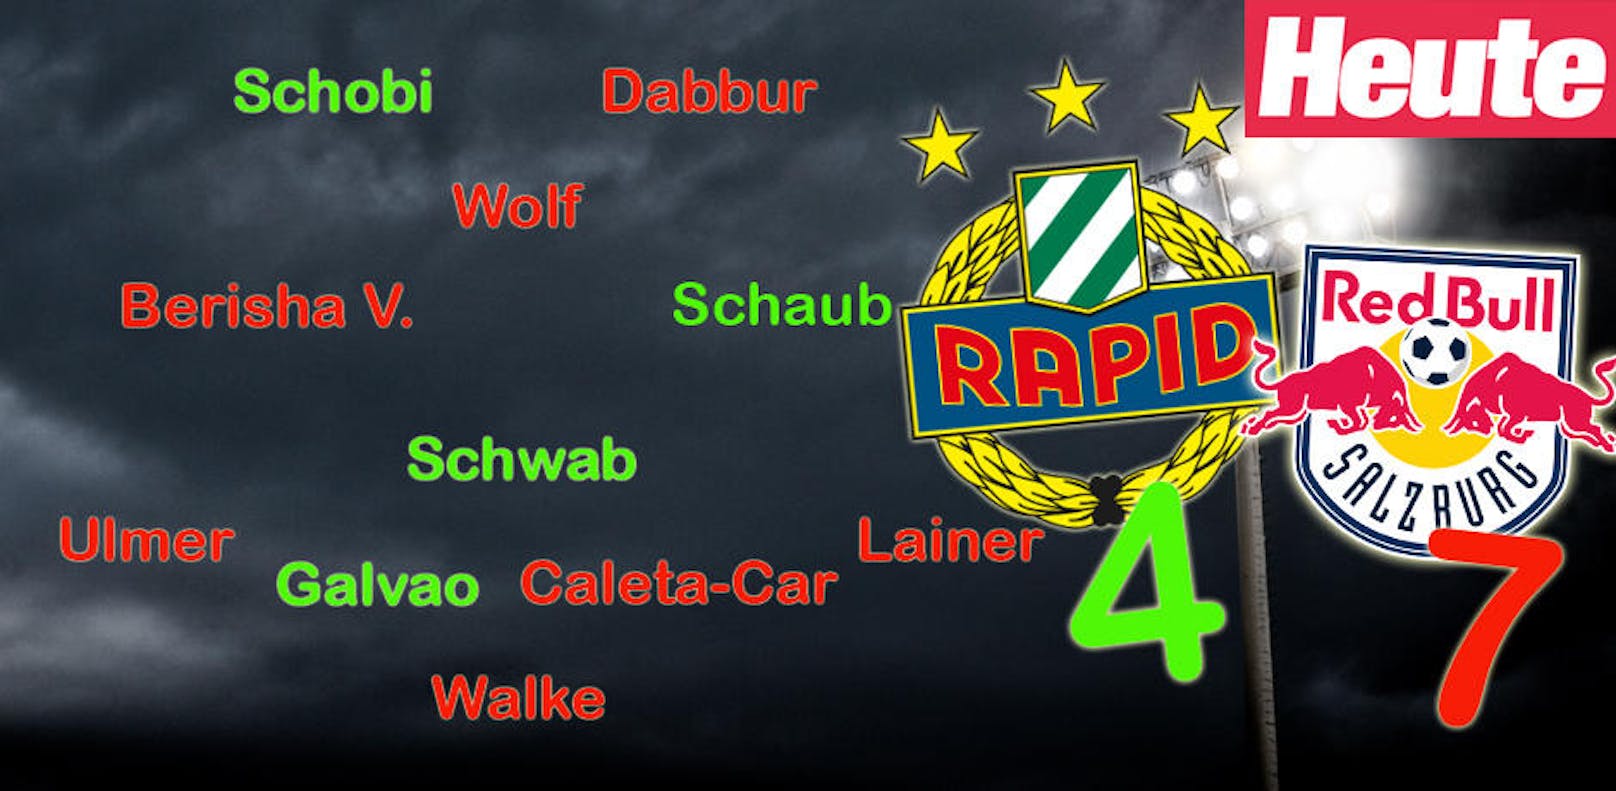 Hier der Überblick der kombinierten "Heute"-Topelf von Red Bull Salzburg und Rapid Wien.